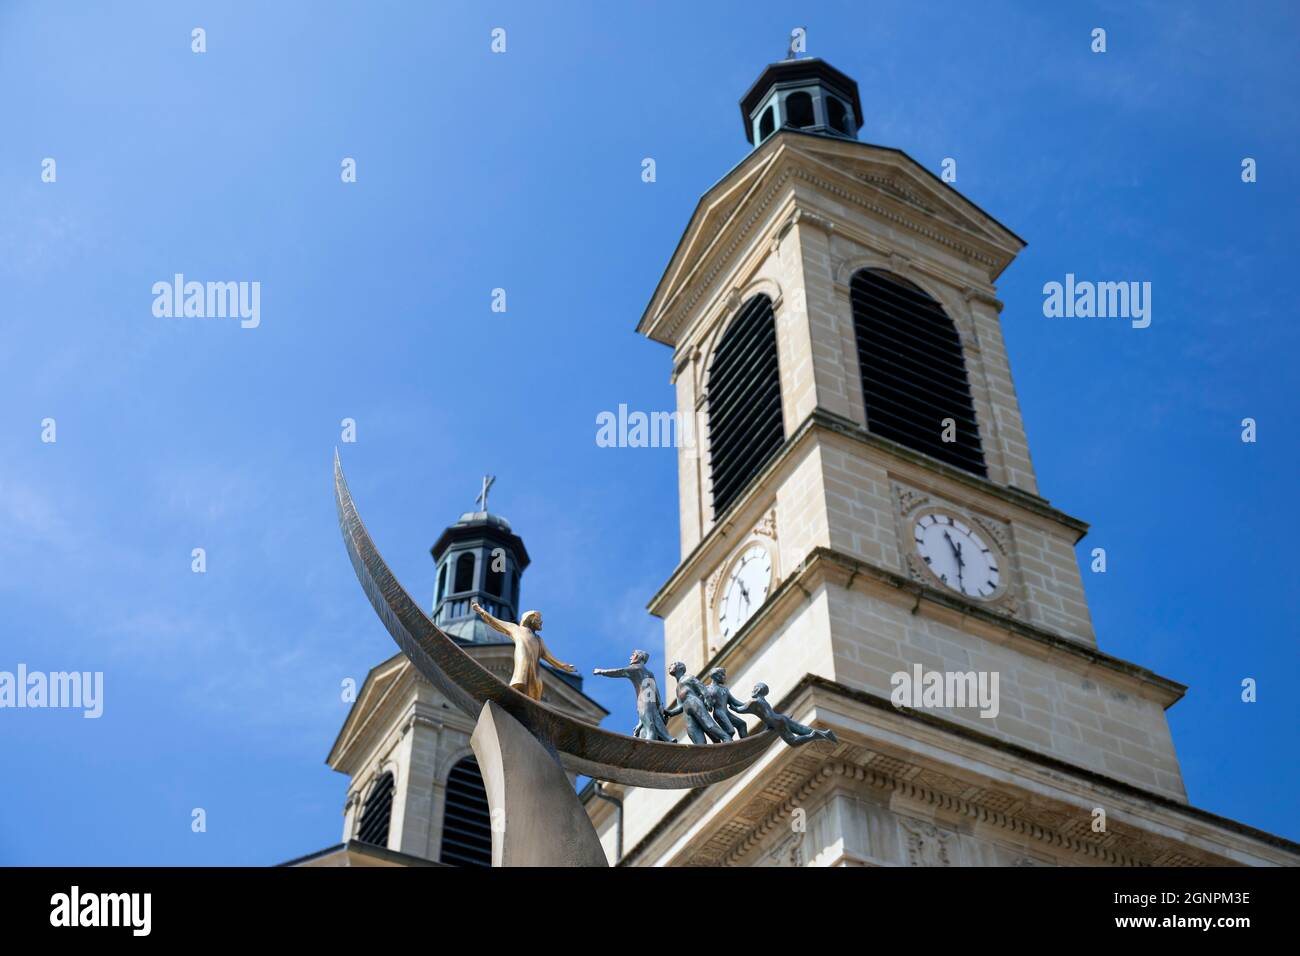 Europa, Luxemburg, Mersch, die Pfarrkirche von Mersch (Église de Mersch) mit der Statue von Jesus, der den Sturm in die Waende nimmt (Detail) Stockfoto